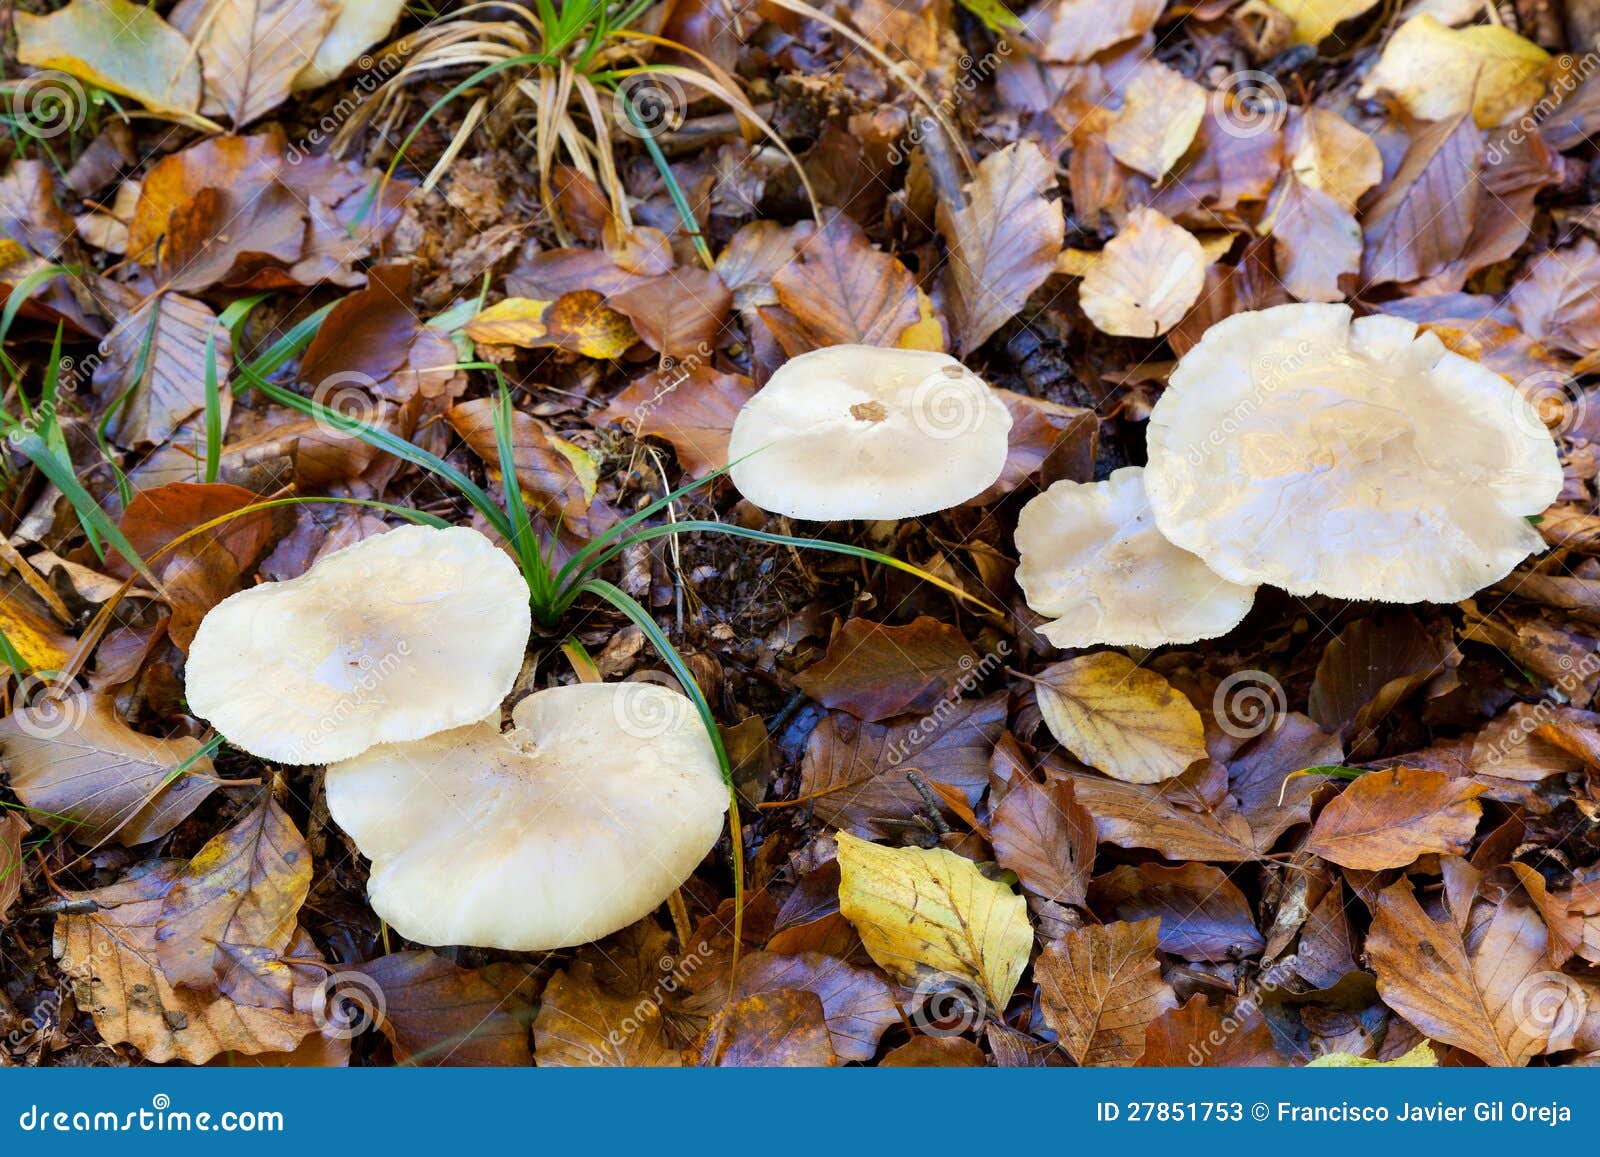 mushrooms in urbasa